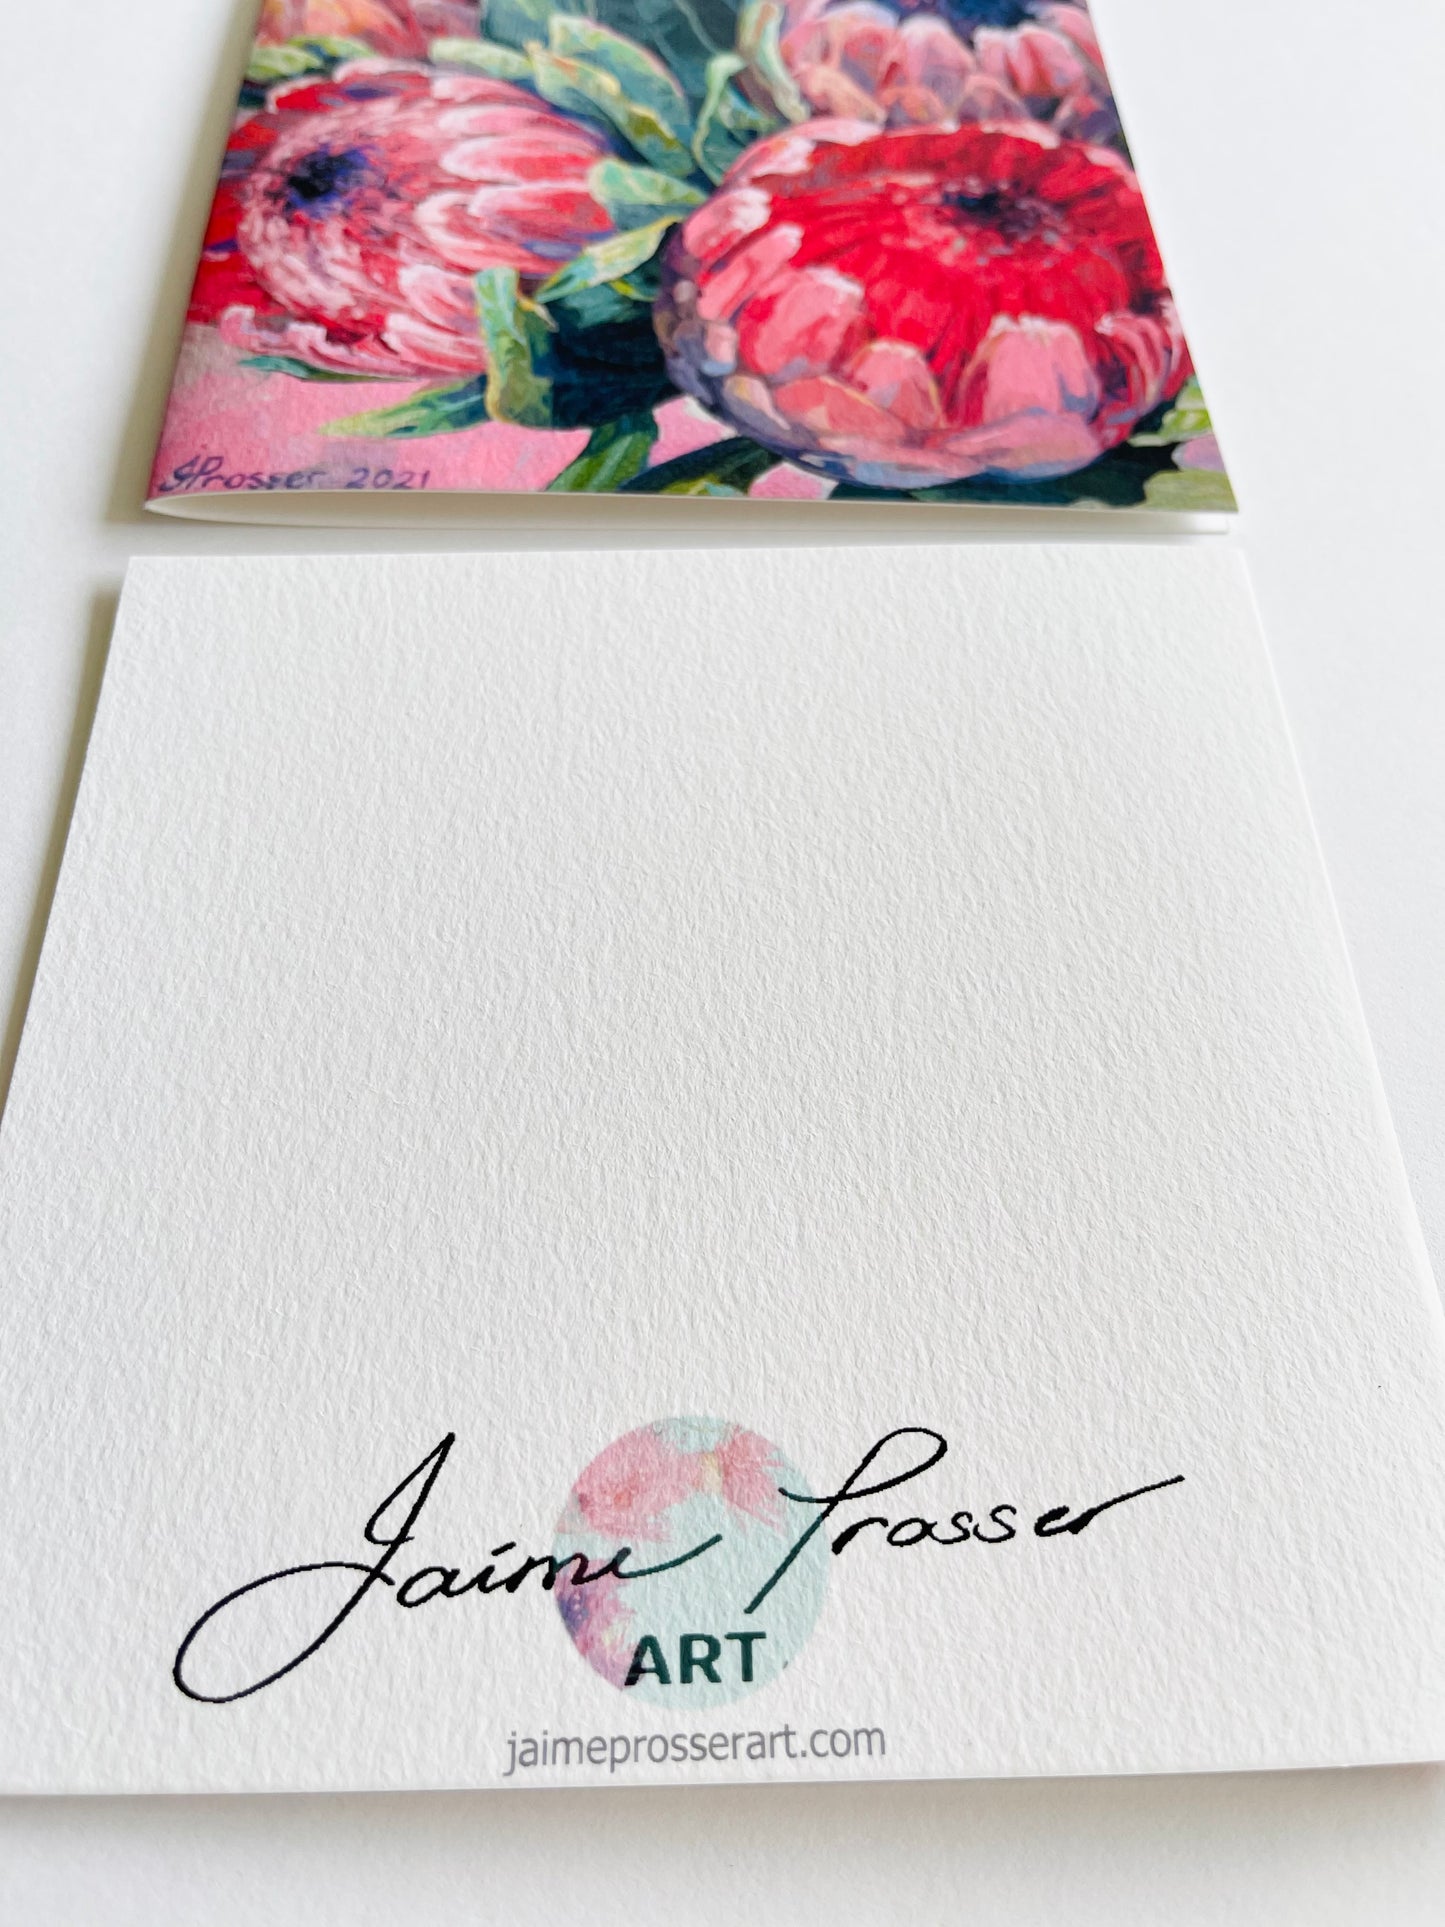 Jaime Prosser Flower Art 